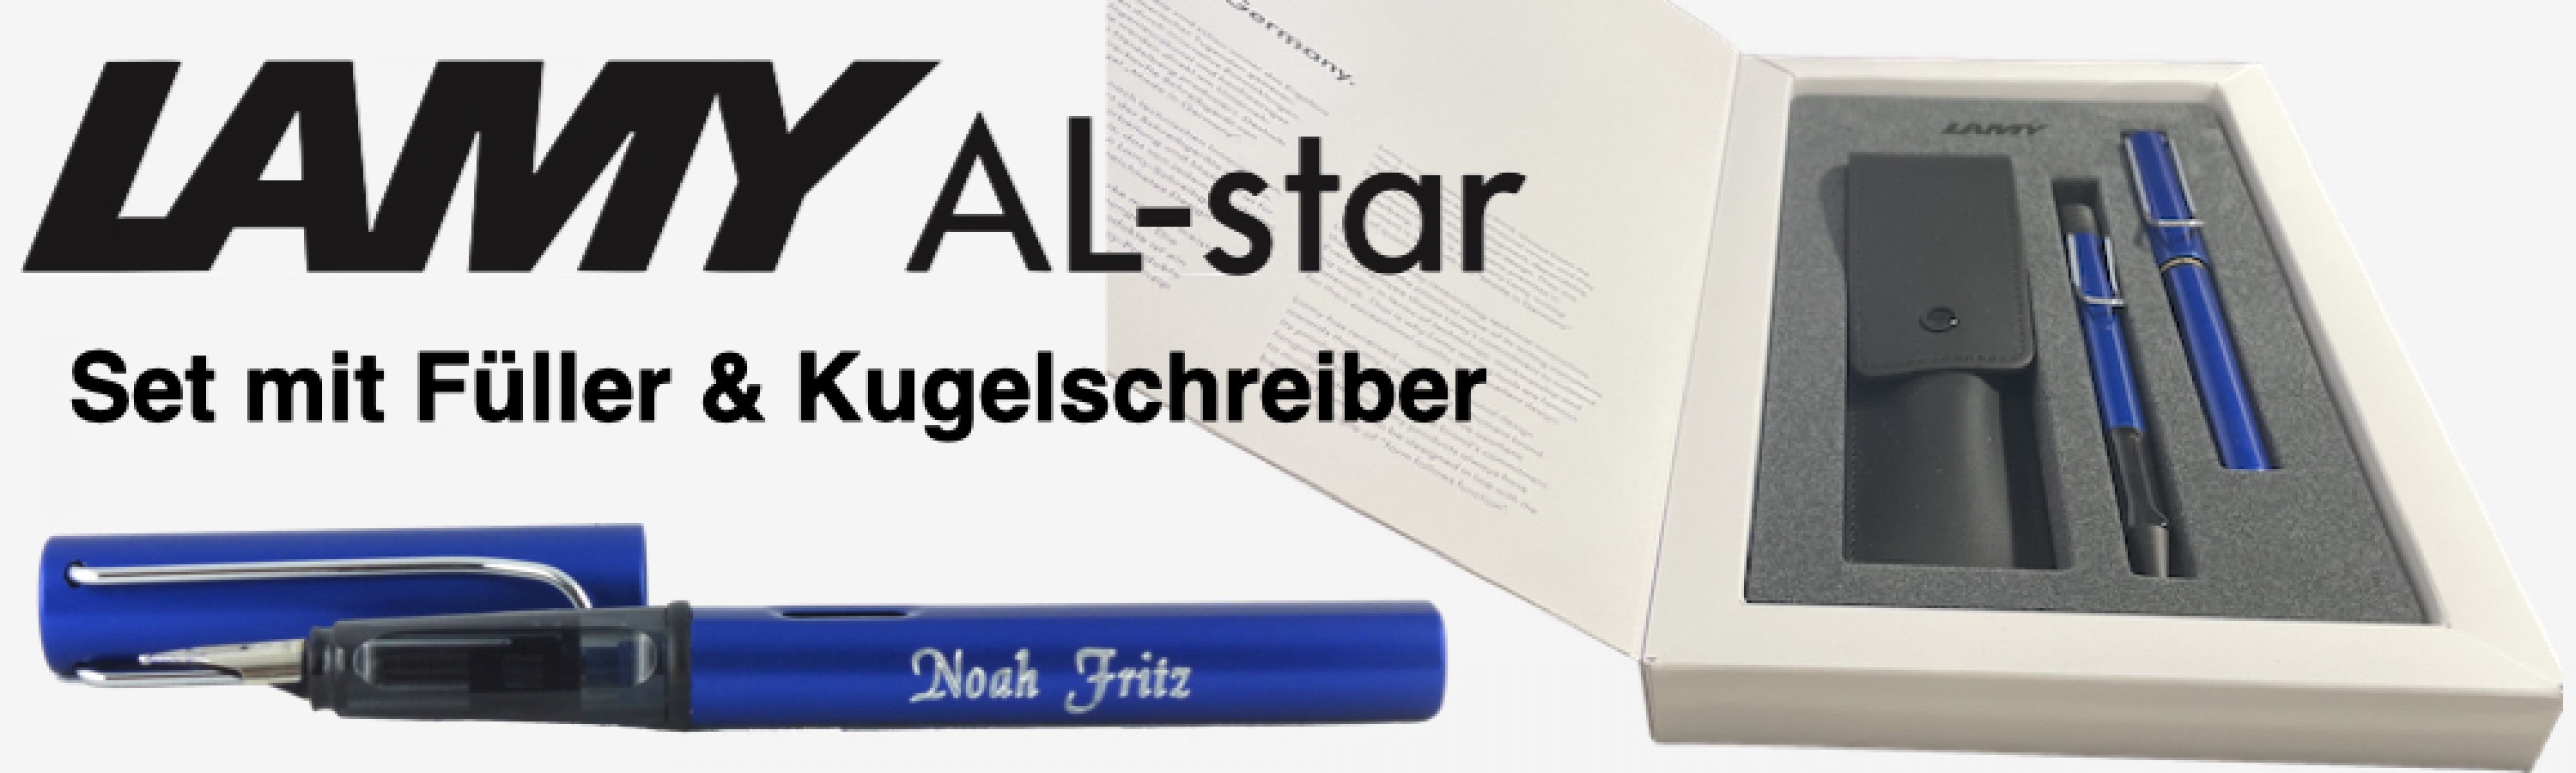 Al-star Füller & Kugelschreiber Set mit Lederetui - Exklusives